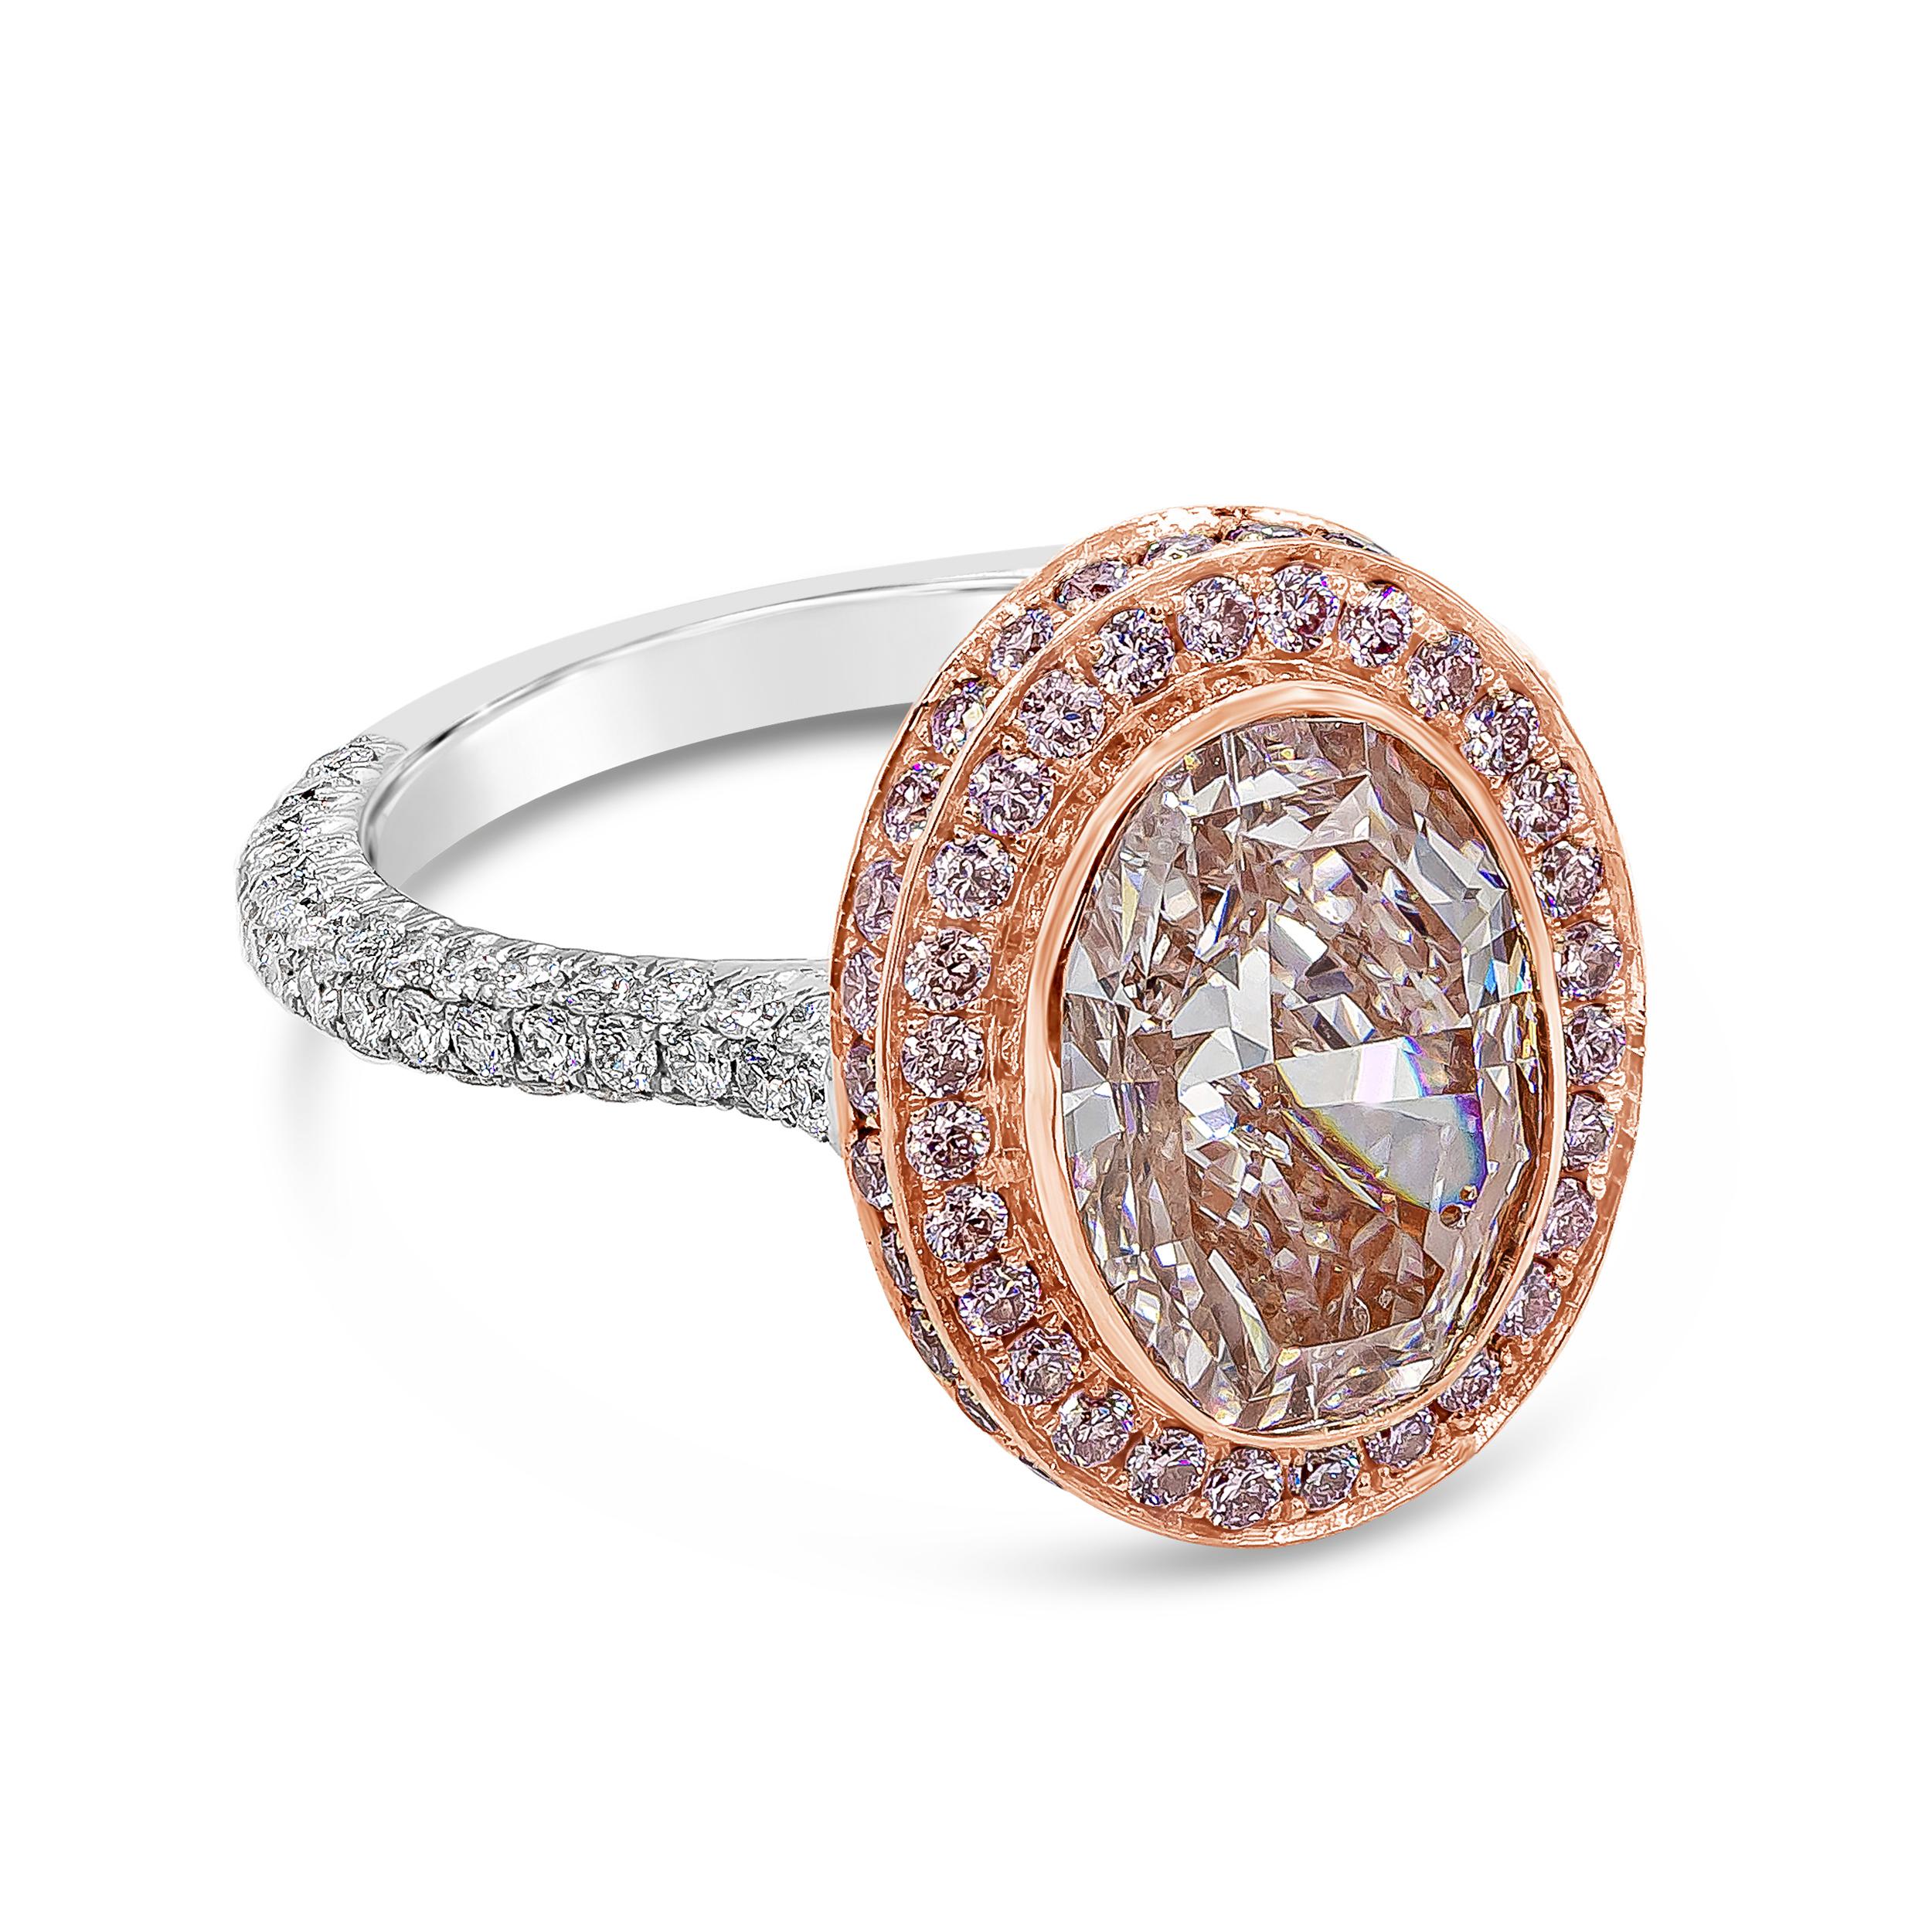 Ein wunderschöner rosafarbener Verlobungsring mit einem oval geschliffenen rosafarbenen Diamanten von 3,66 Karat, der vom GIA als 